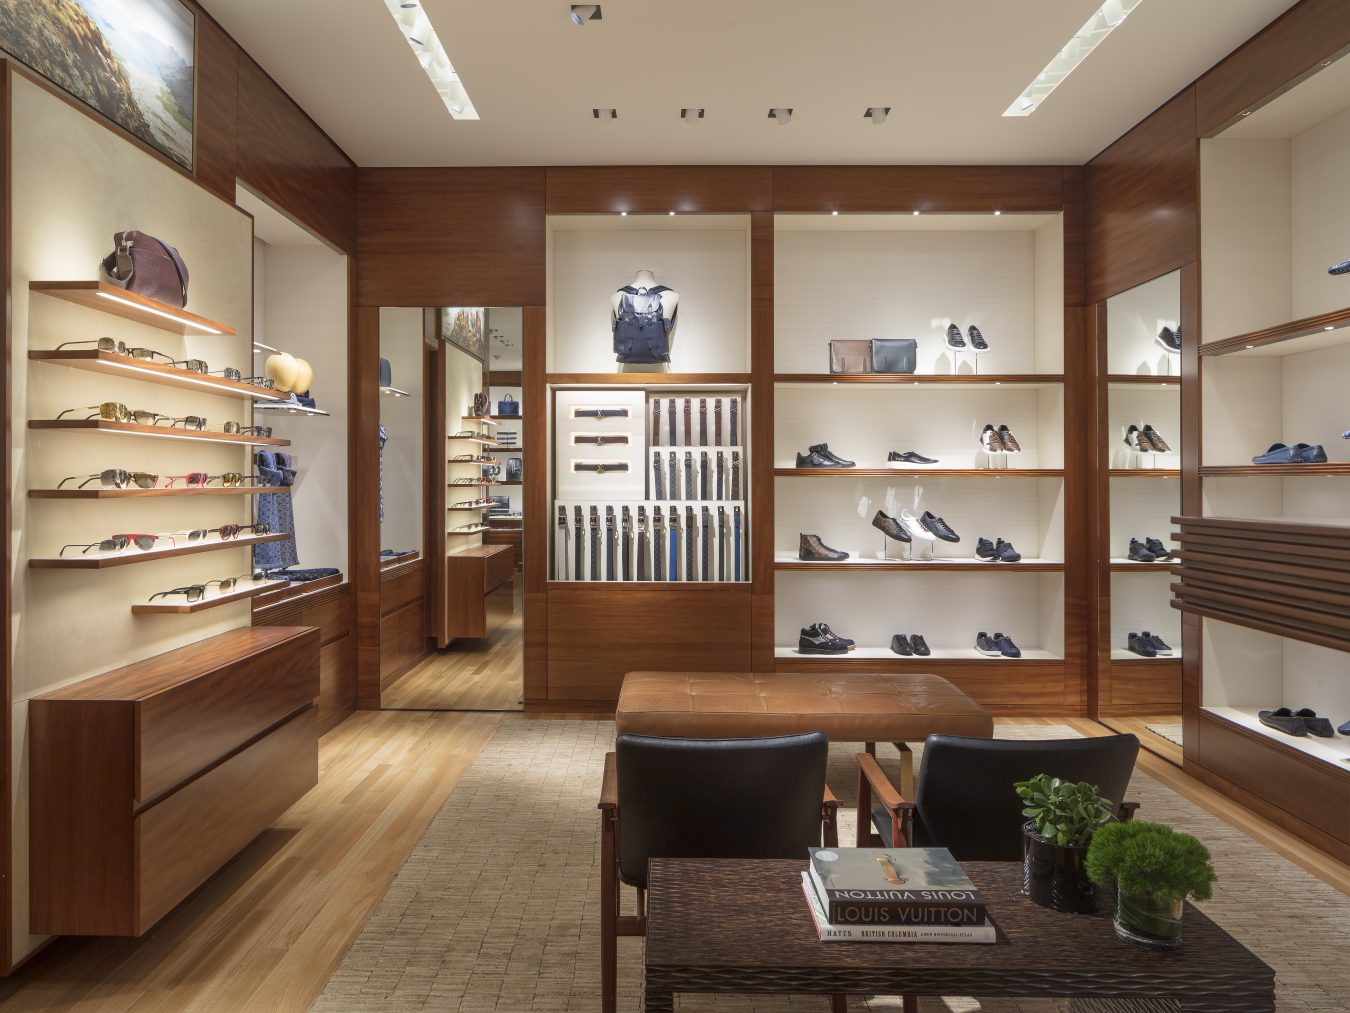 Louis Vuitton Holt Renfrew Vancouver store, Canada